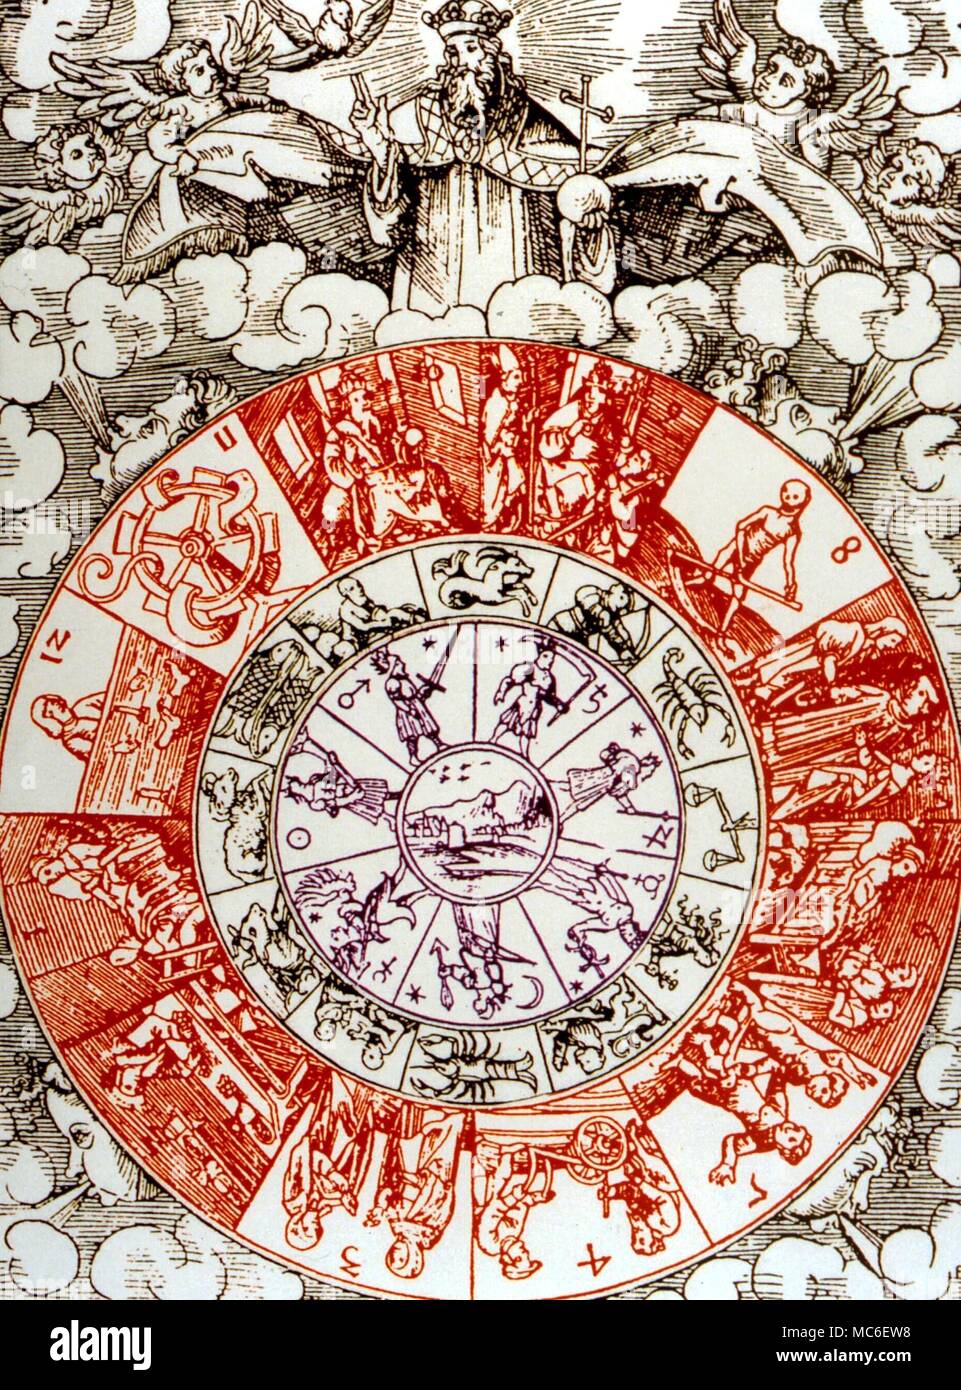 Engel - Der Tierkreis und planetarischen Sphären innerhalb einer Crescent der Neun himmlische Hierarchien gesetzt. Von der 1493 Ausgabe des Hartmann Schedel's 'Nürnberg Chronicles' Stockfoto